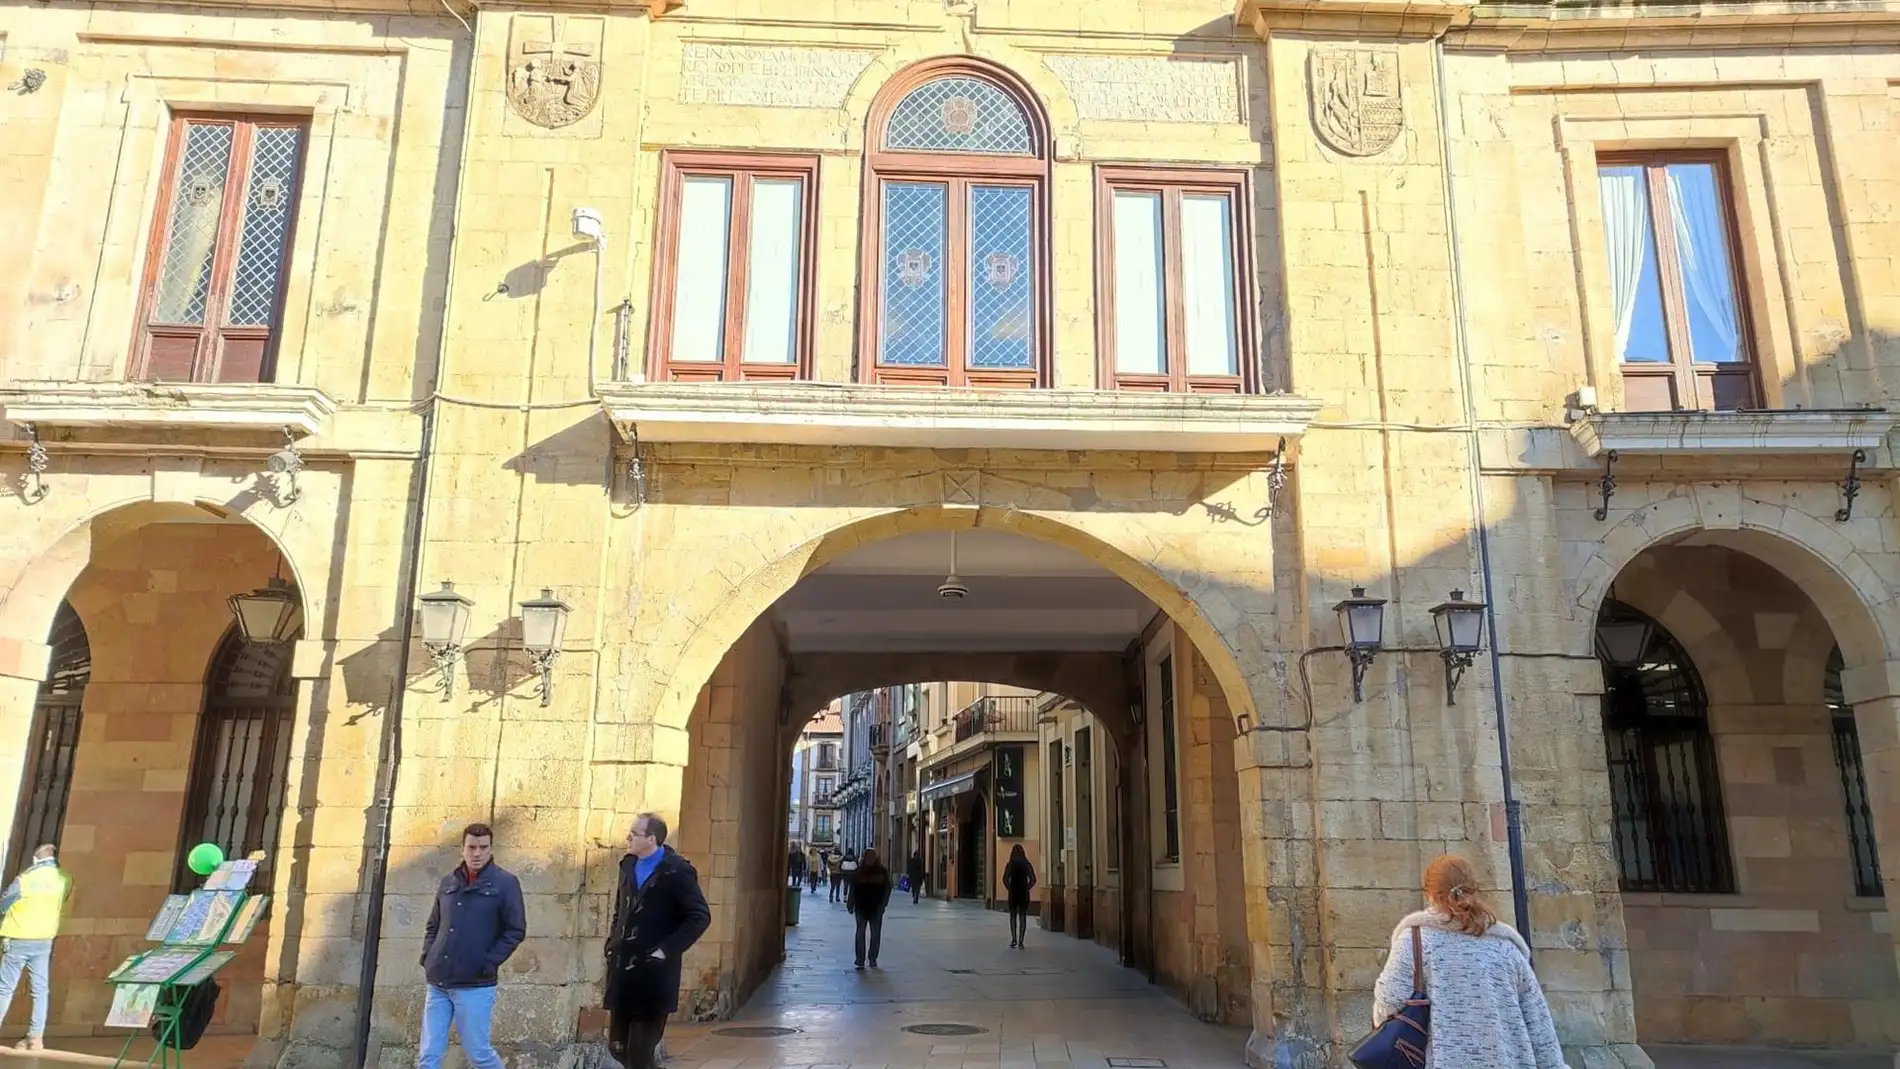 El Ayuntamiento de Oviedo, sin las barandillas ni las banderas institucionales, retiradas por reparación. - EUROPA PRESS